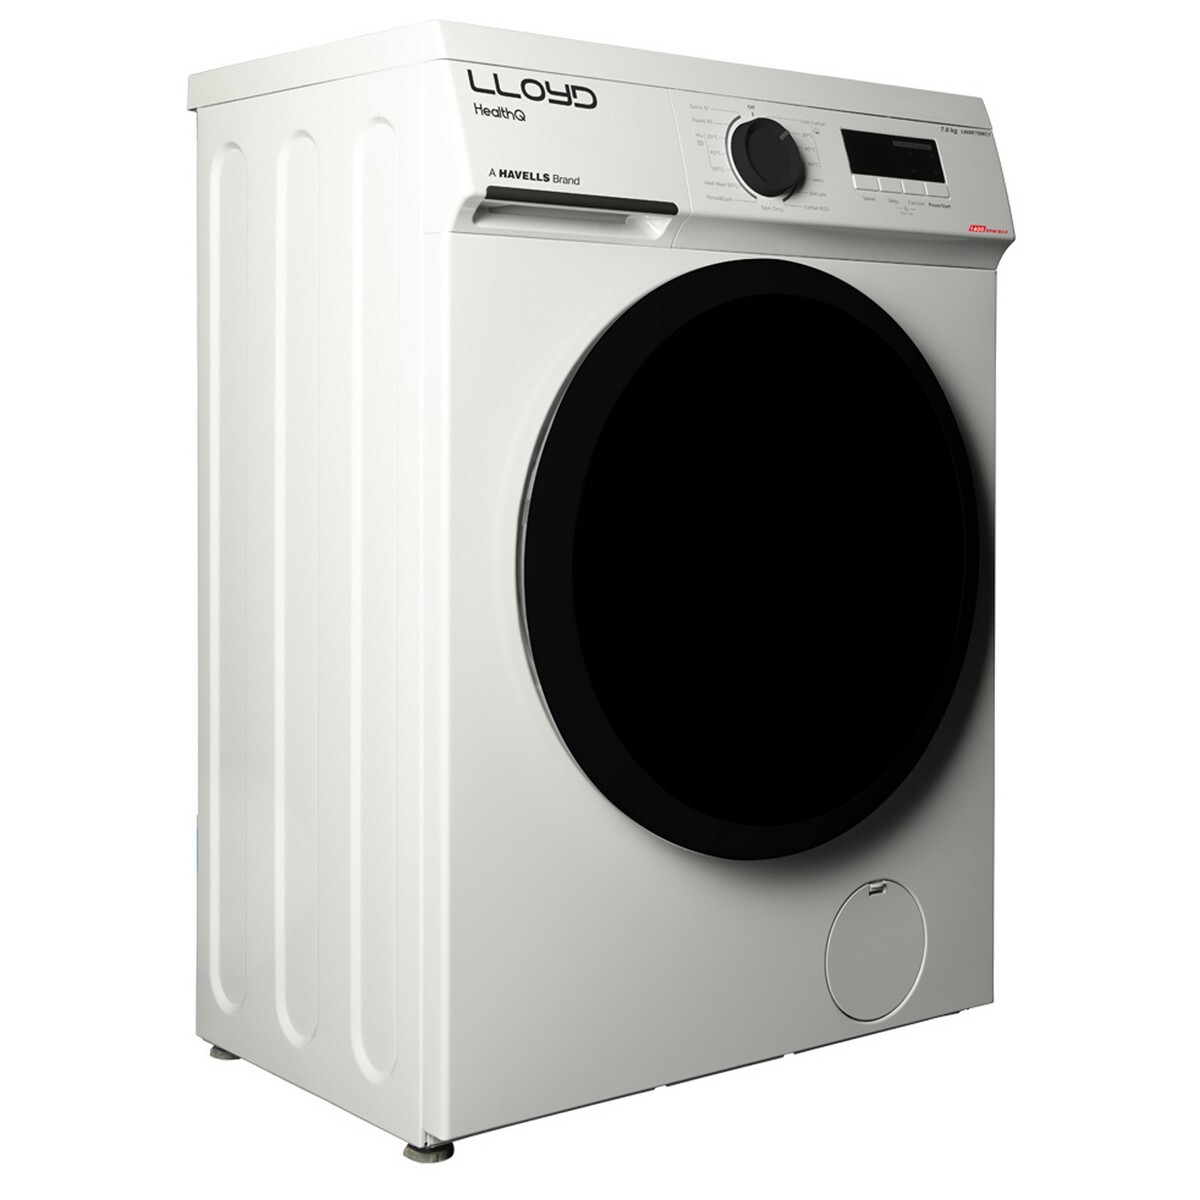 Lloyd Front Load Washing Machine GLWMF70WC1 7Kg